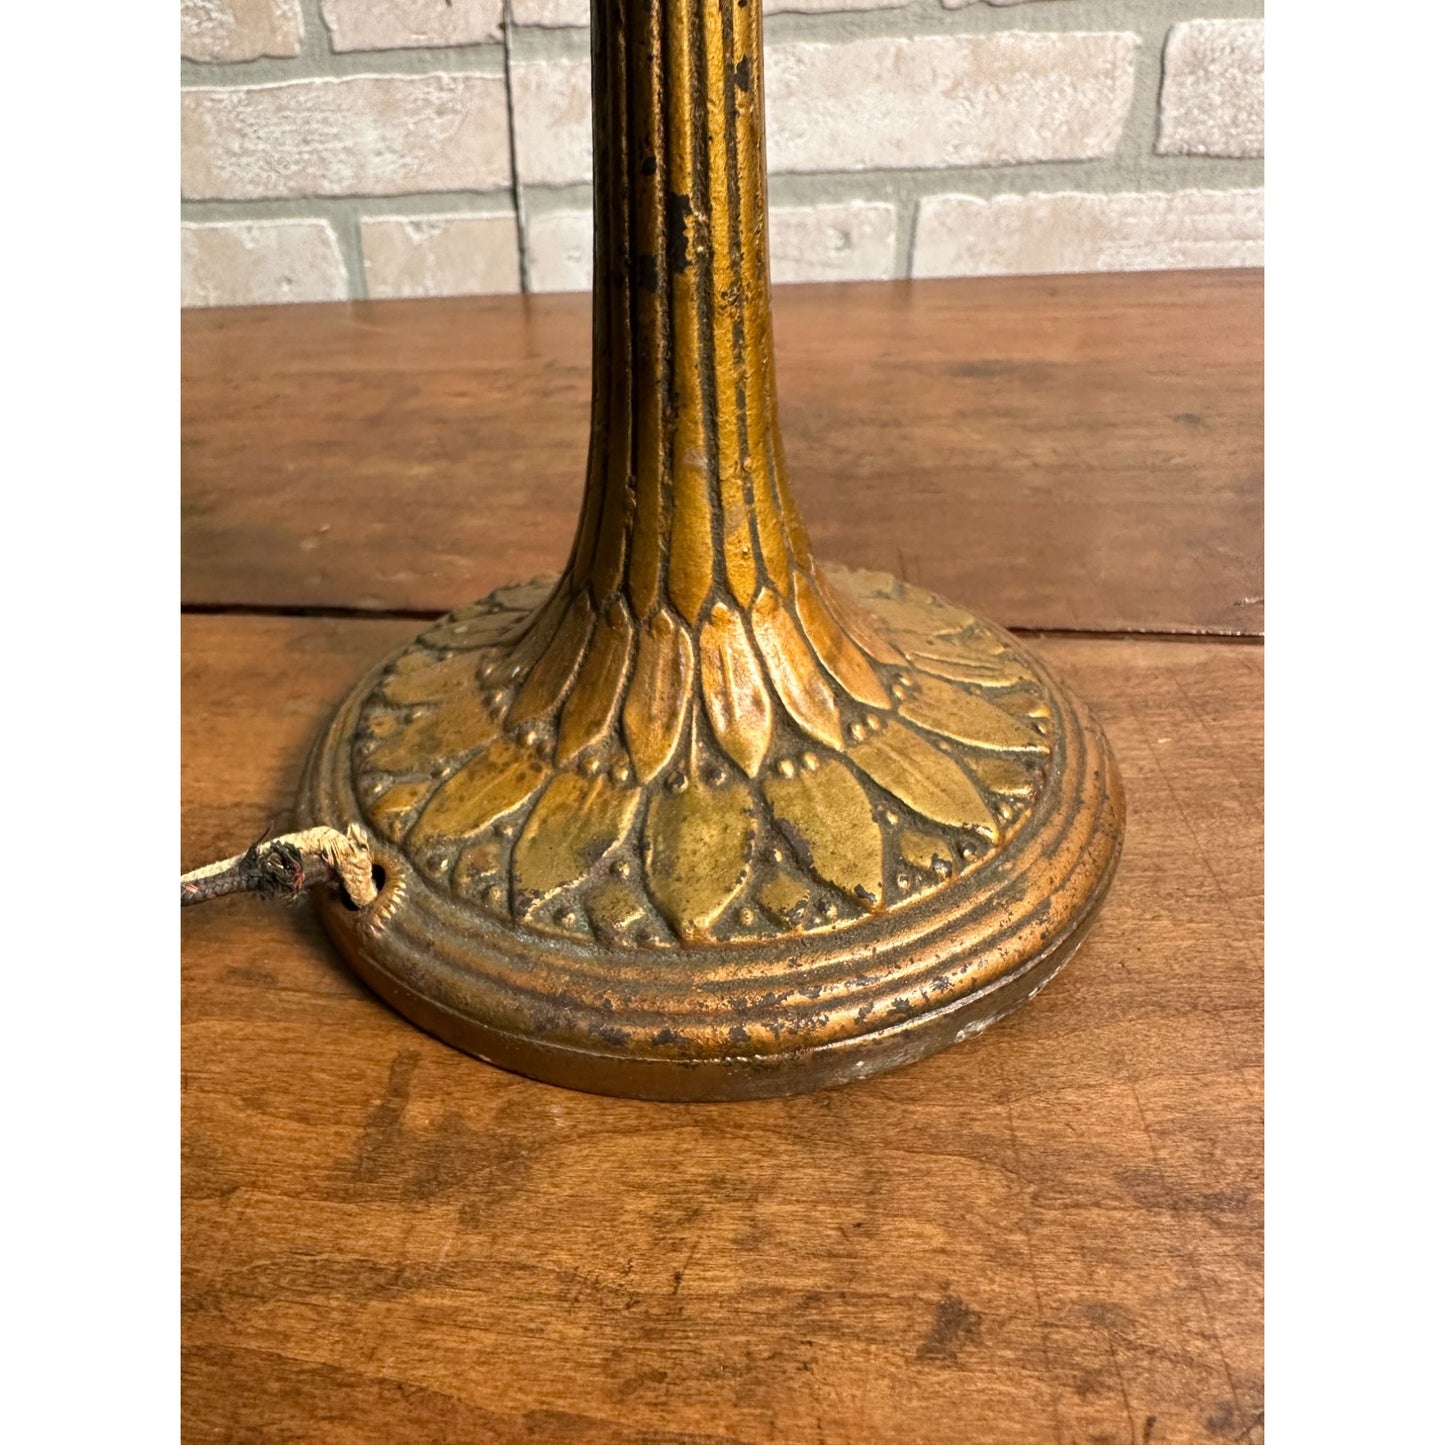 Rare Vintage 1920s HANDEL Signed Trellis Rose Glass Shade Desk Lamp